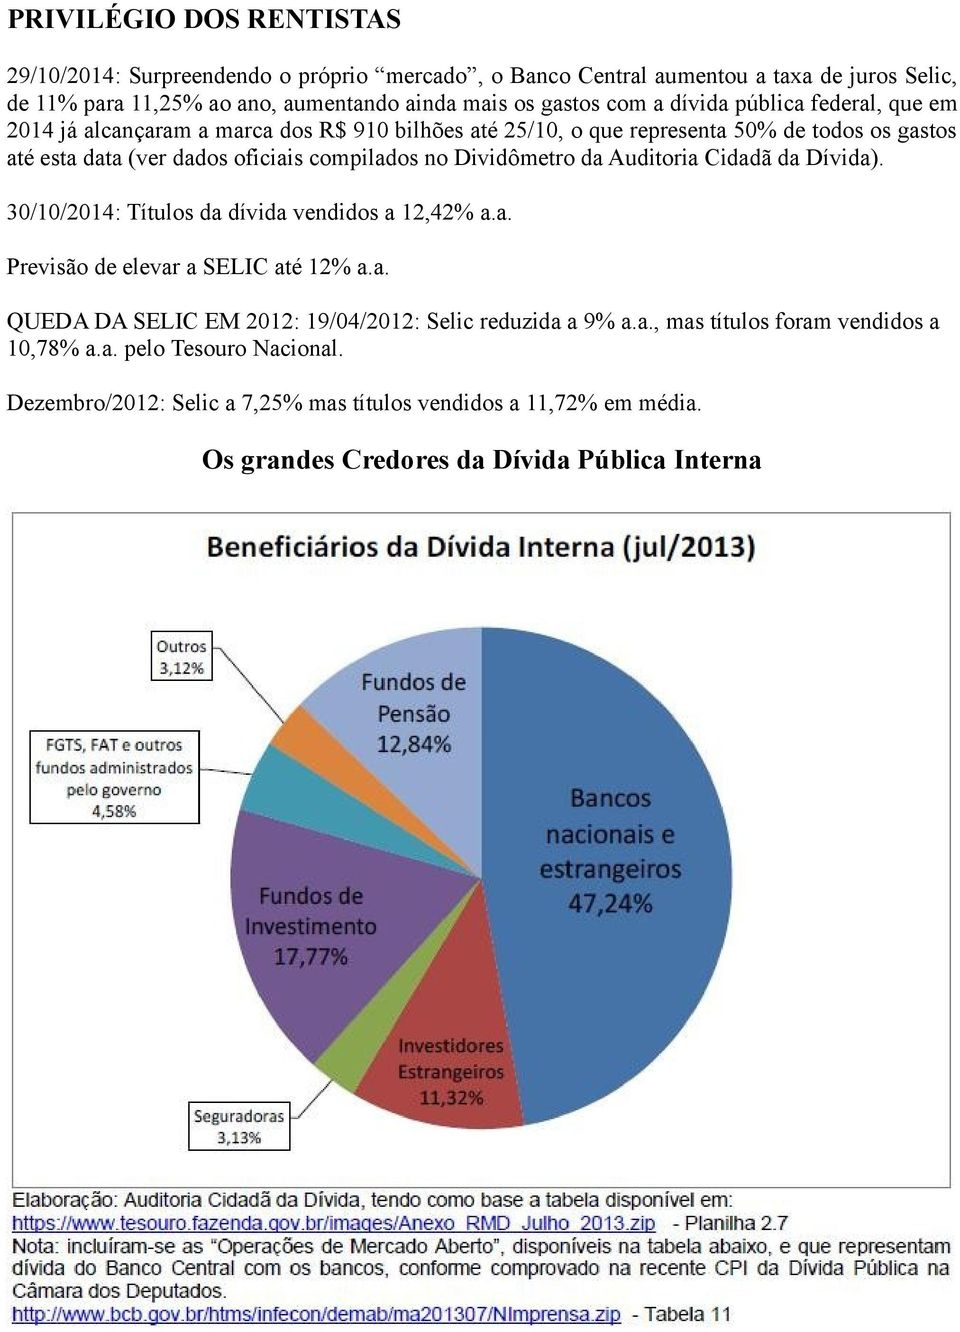 Dividômetro da Auditoria Cidadã da Dívida). 30/10/2014: Títulos da dívida vendidos a 12,42% a.a. Previsão de elevar a SELIC até 12% a.a. QUEDA DA SELIC EM 2012: 19/04/2012: Selic reduzida a 9% a.